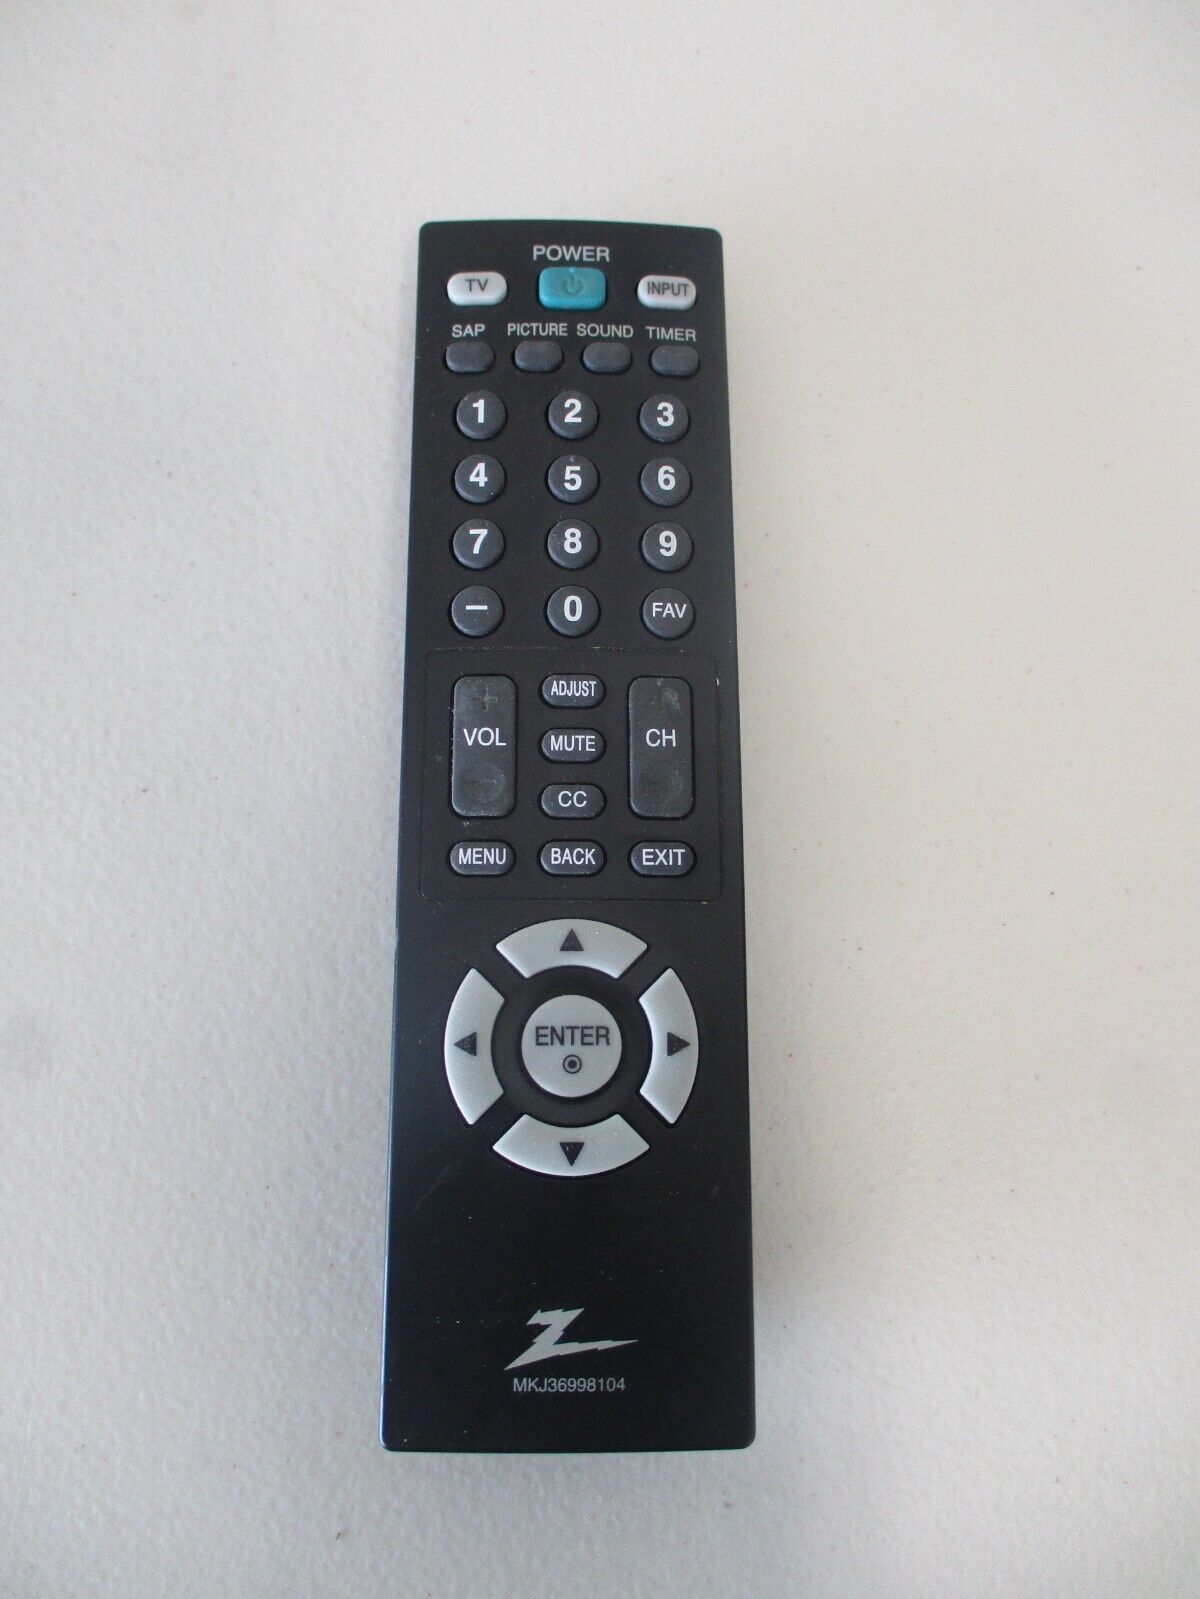 Zenith LG MKJ36998104 Remote for Z19LCD3 Z22LCD3 19LCD3 22LCD3 - $9.46